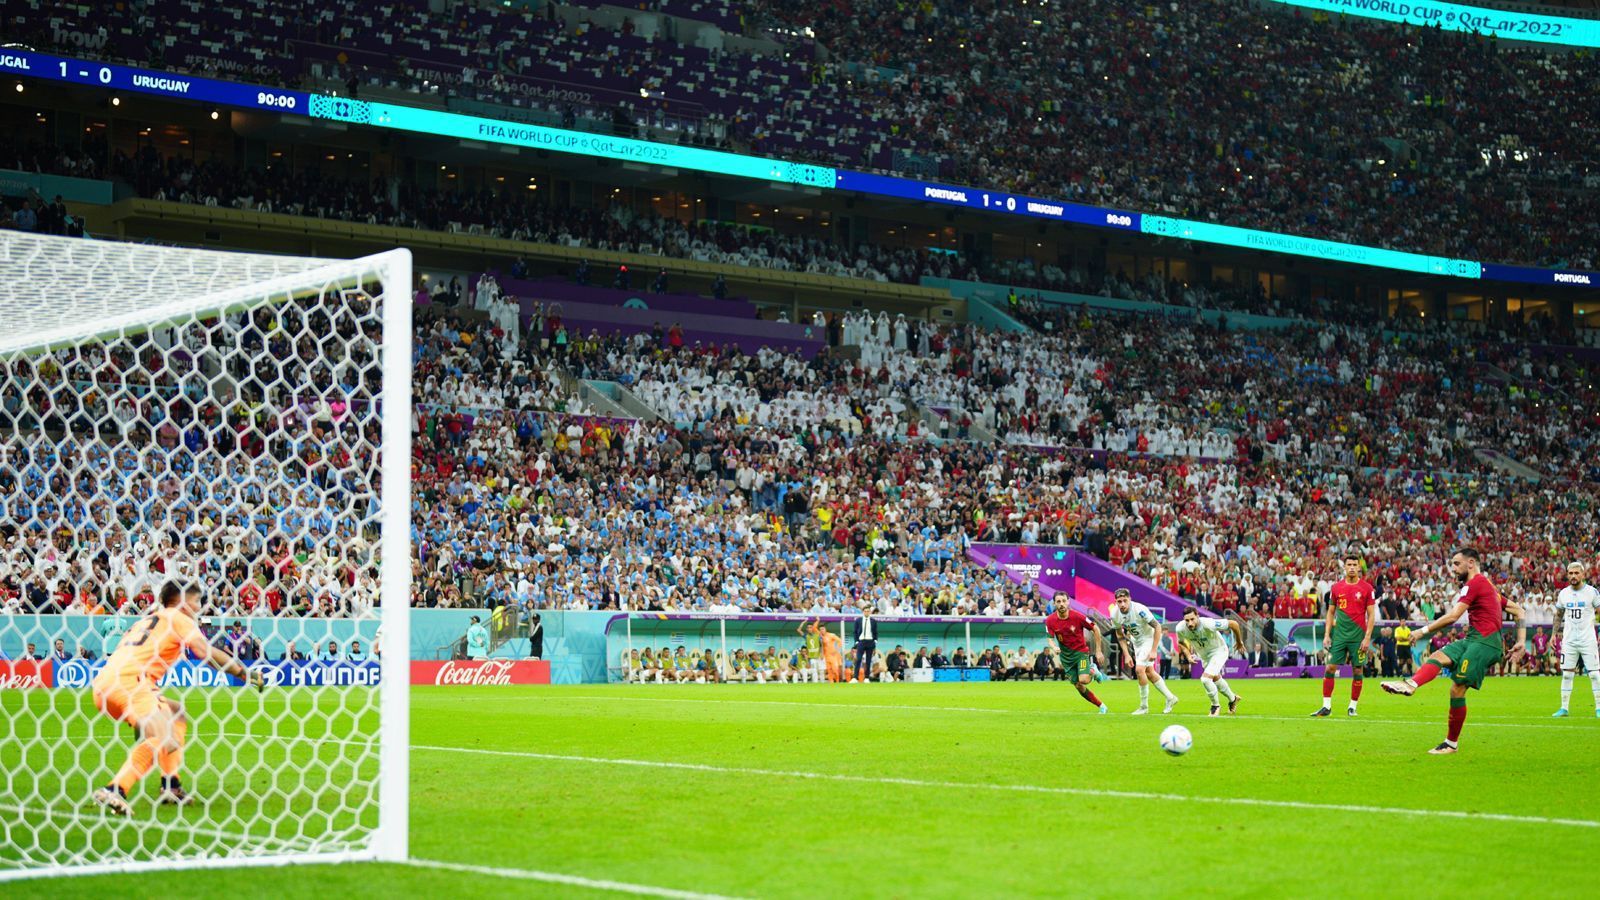 
                <strong>Cristiano Ronaldo gegen Uruguay: Sperenzchen, Flitzer, Achtelfinale!</strong><br>
                Bitter für ihn: In der Nachspielzeit bekamen die Portugiesen einen umstrittenen Handelfmeter zugesprochen. Das wäre ein Fall für CR7 gewesen. So trat Fernandes an, um seinen zweiten Treffer an diesem Abend zu bejubeln. Insgesamt ein ordentlicher Auftritt mit einigen Schwächephasen, sowohl bei Ronaldo als auch beim gesamten Team.
              